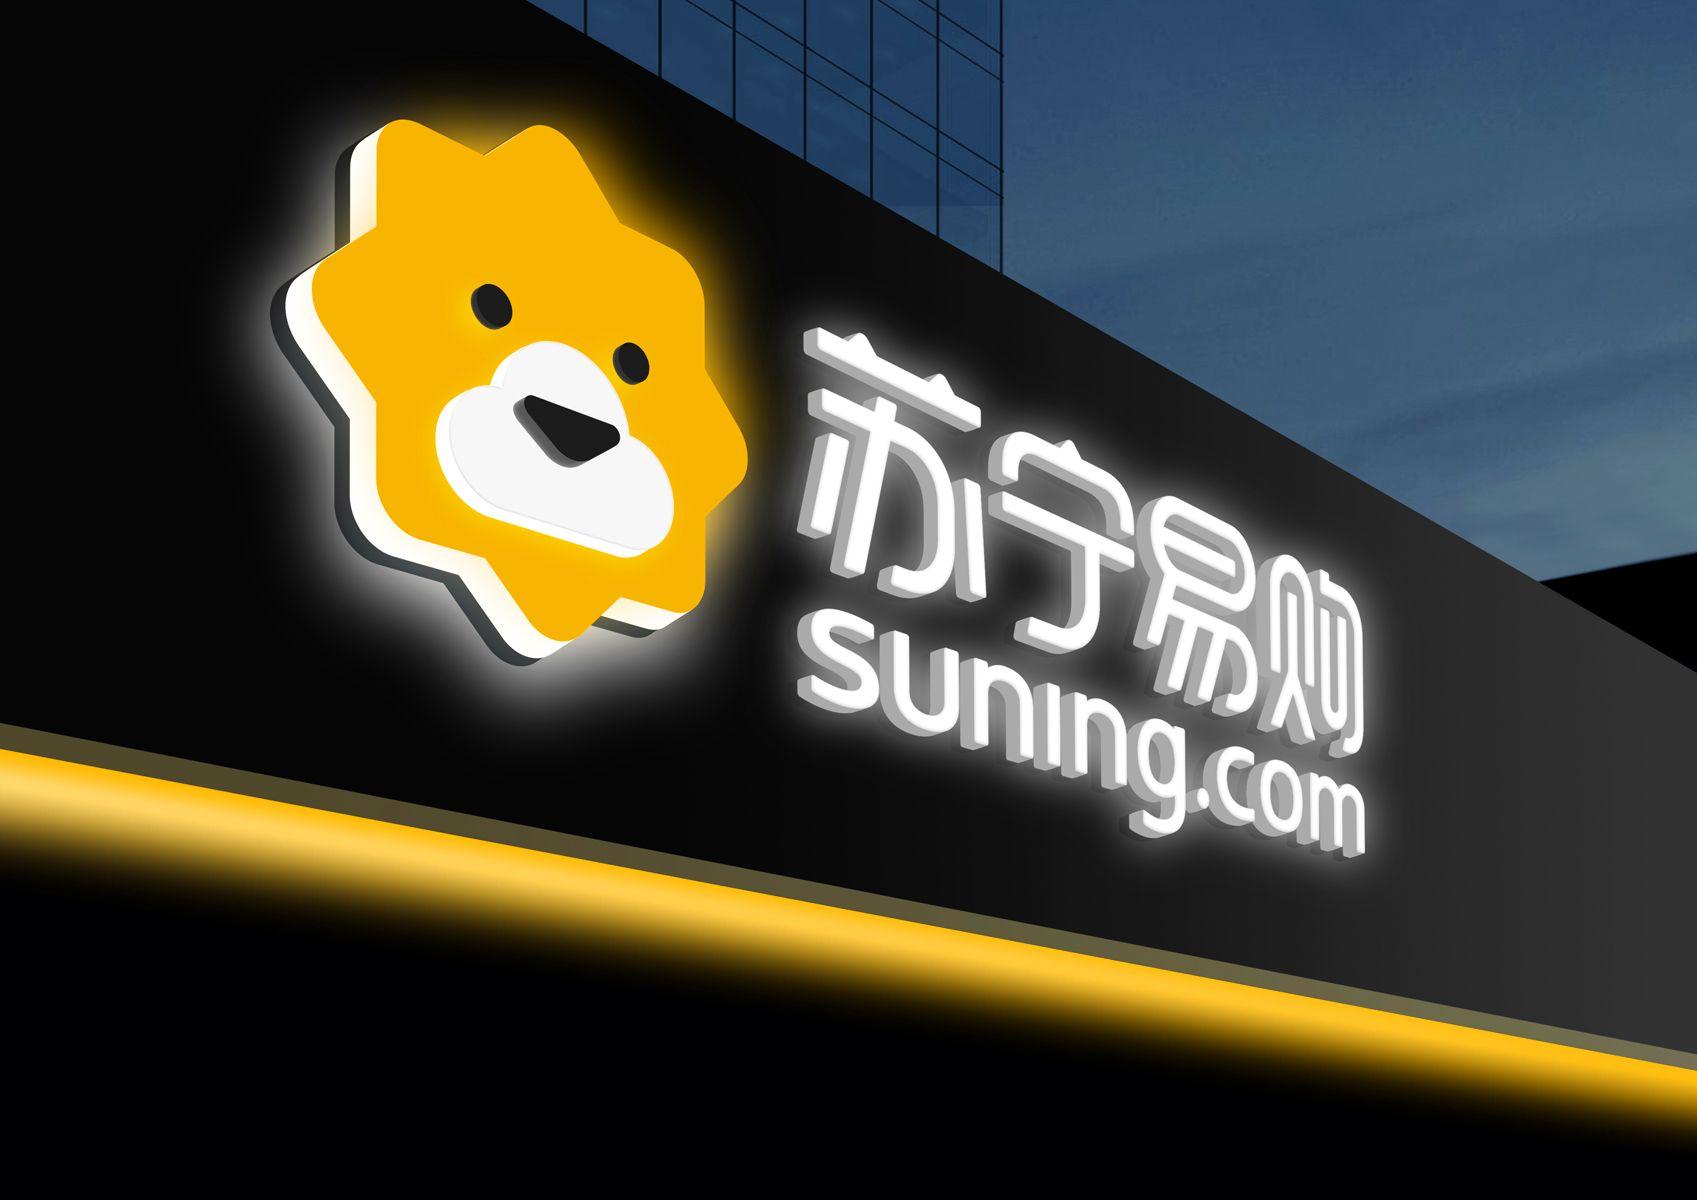 Suning Logo - Suning.com